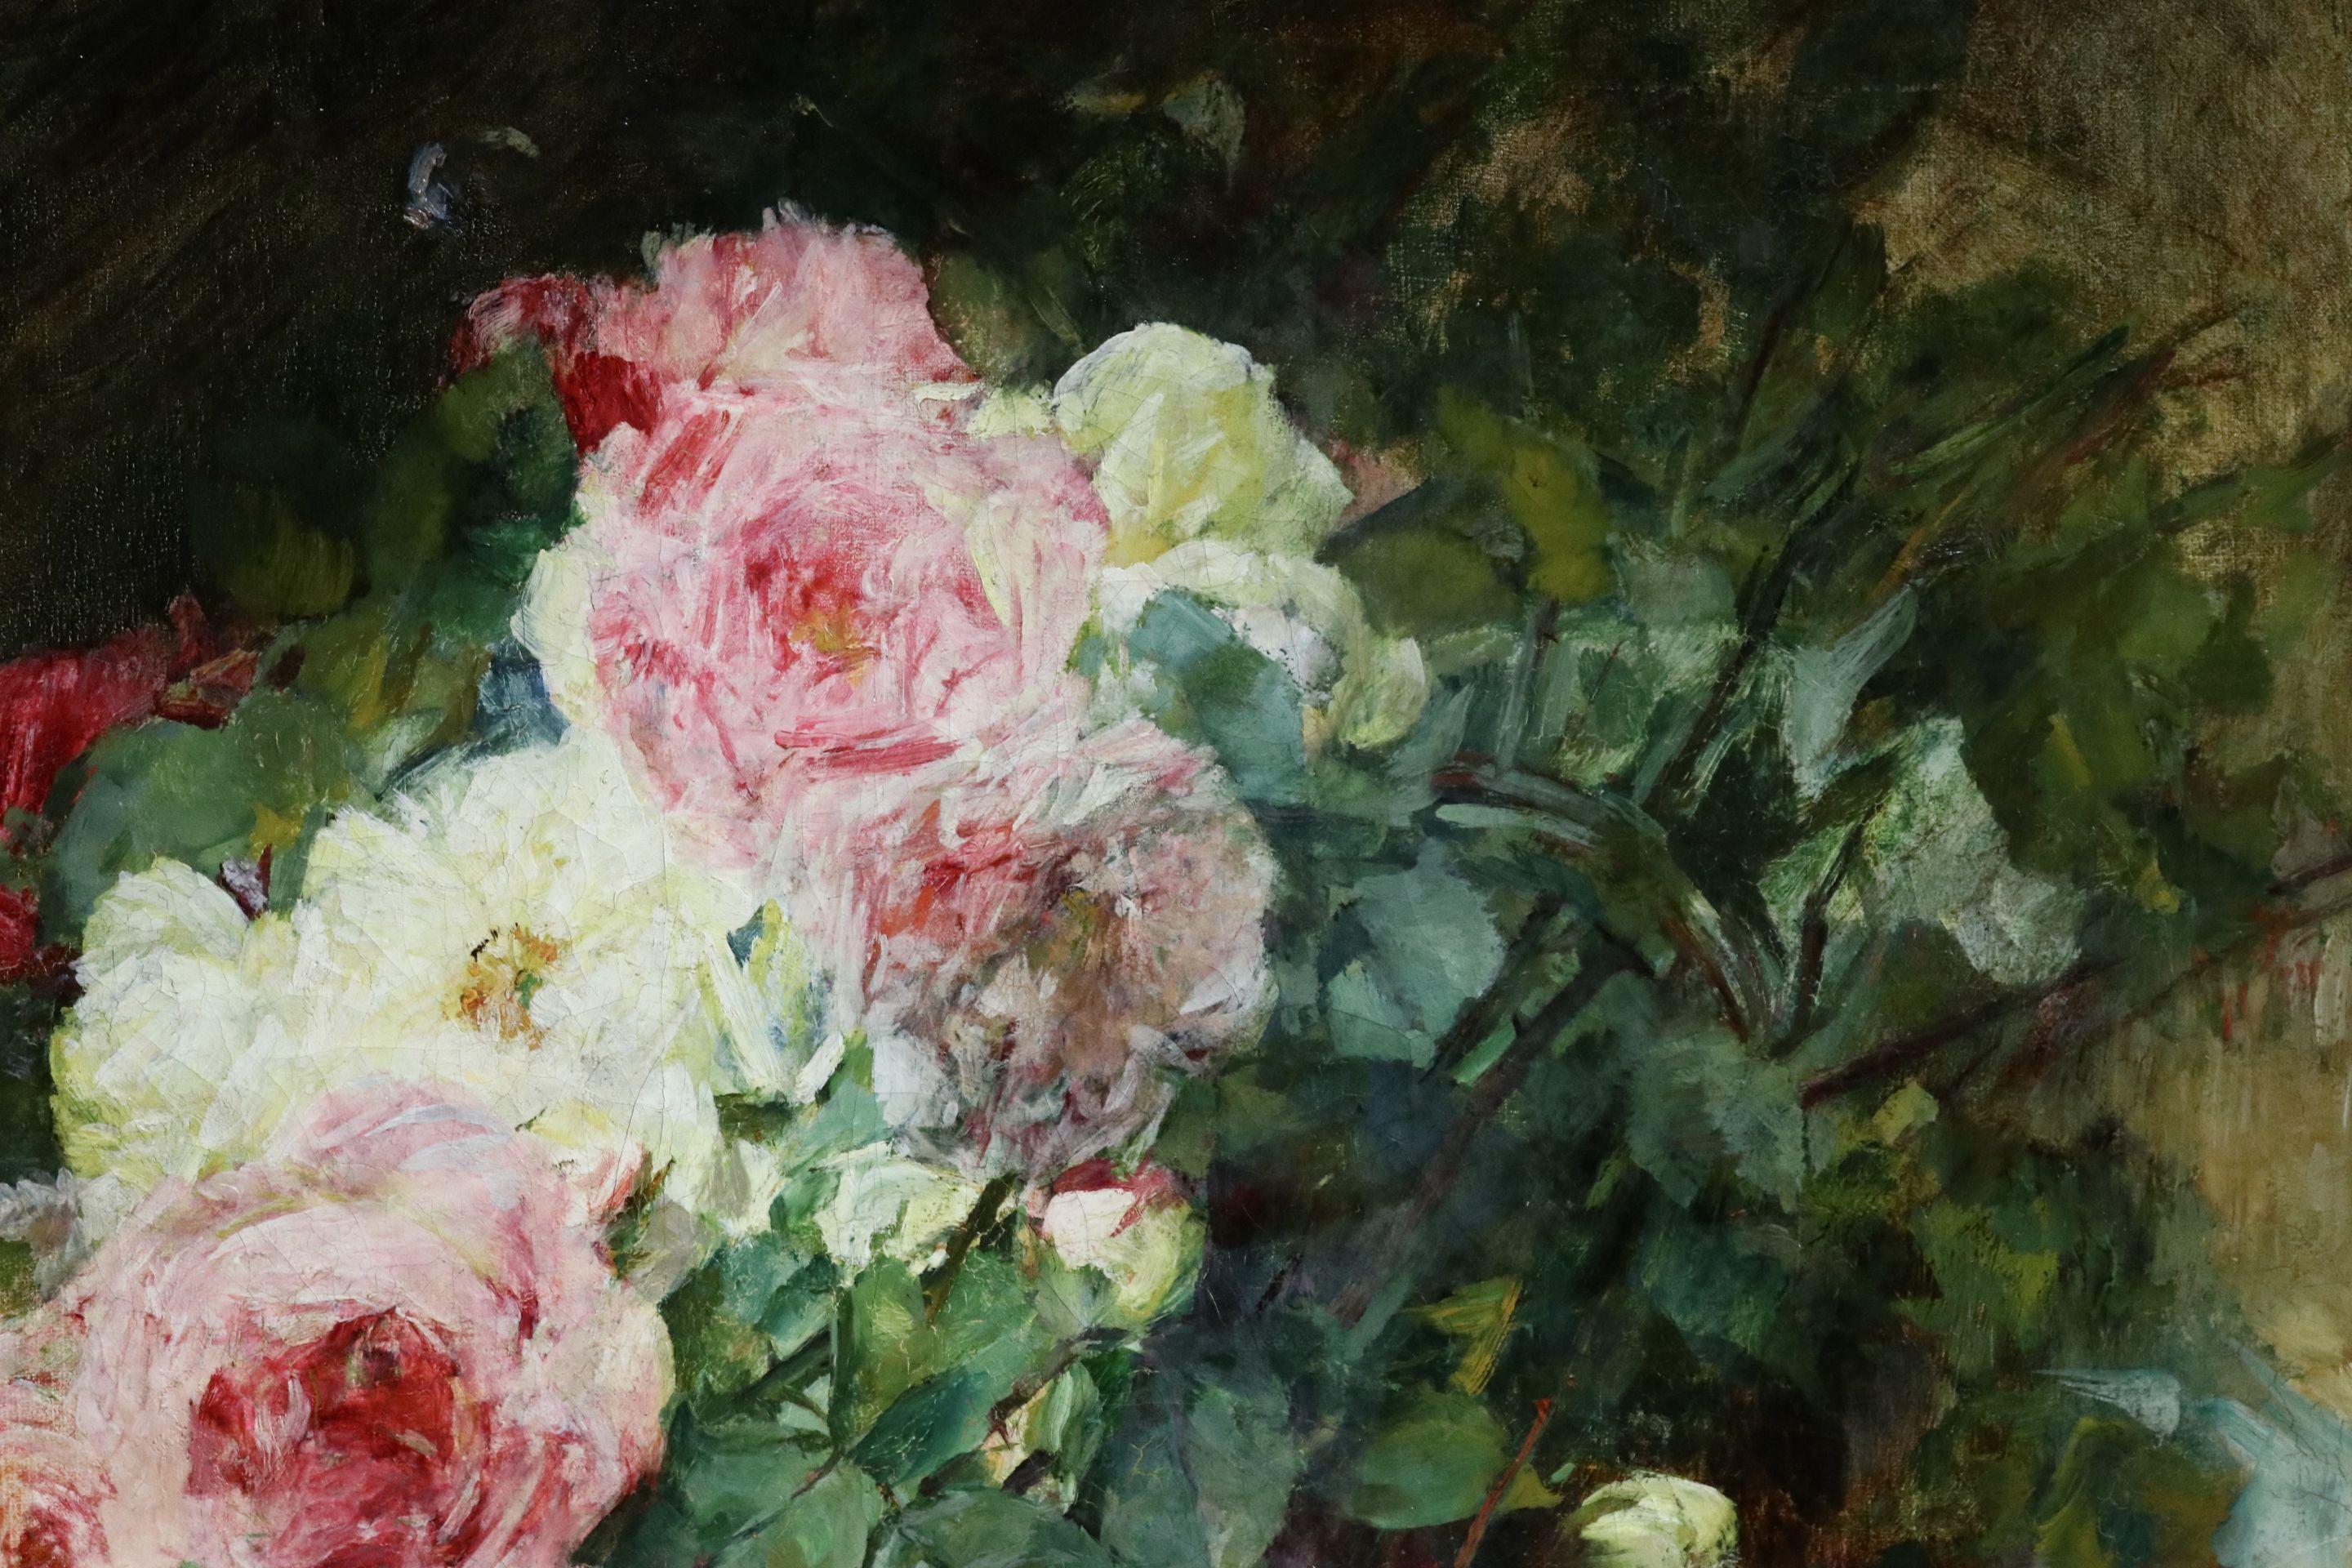 Nature morte impressionniste signée et datée, huile sur toile originale du peintre français Georges Jeannin. L'œuvre représente un bouquet de roses roses, blanches et rouges, devant lequel est placé un éventail en papier. 

Signature :
Signé en bas